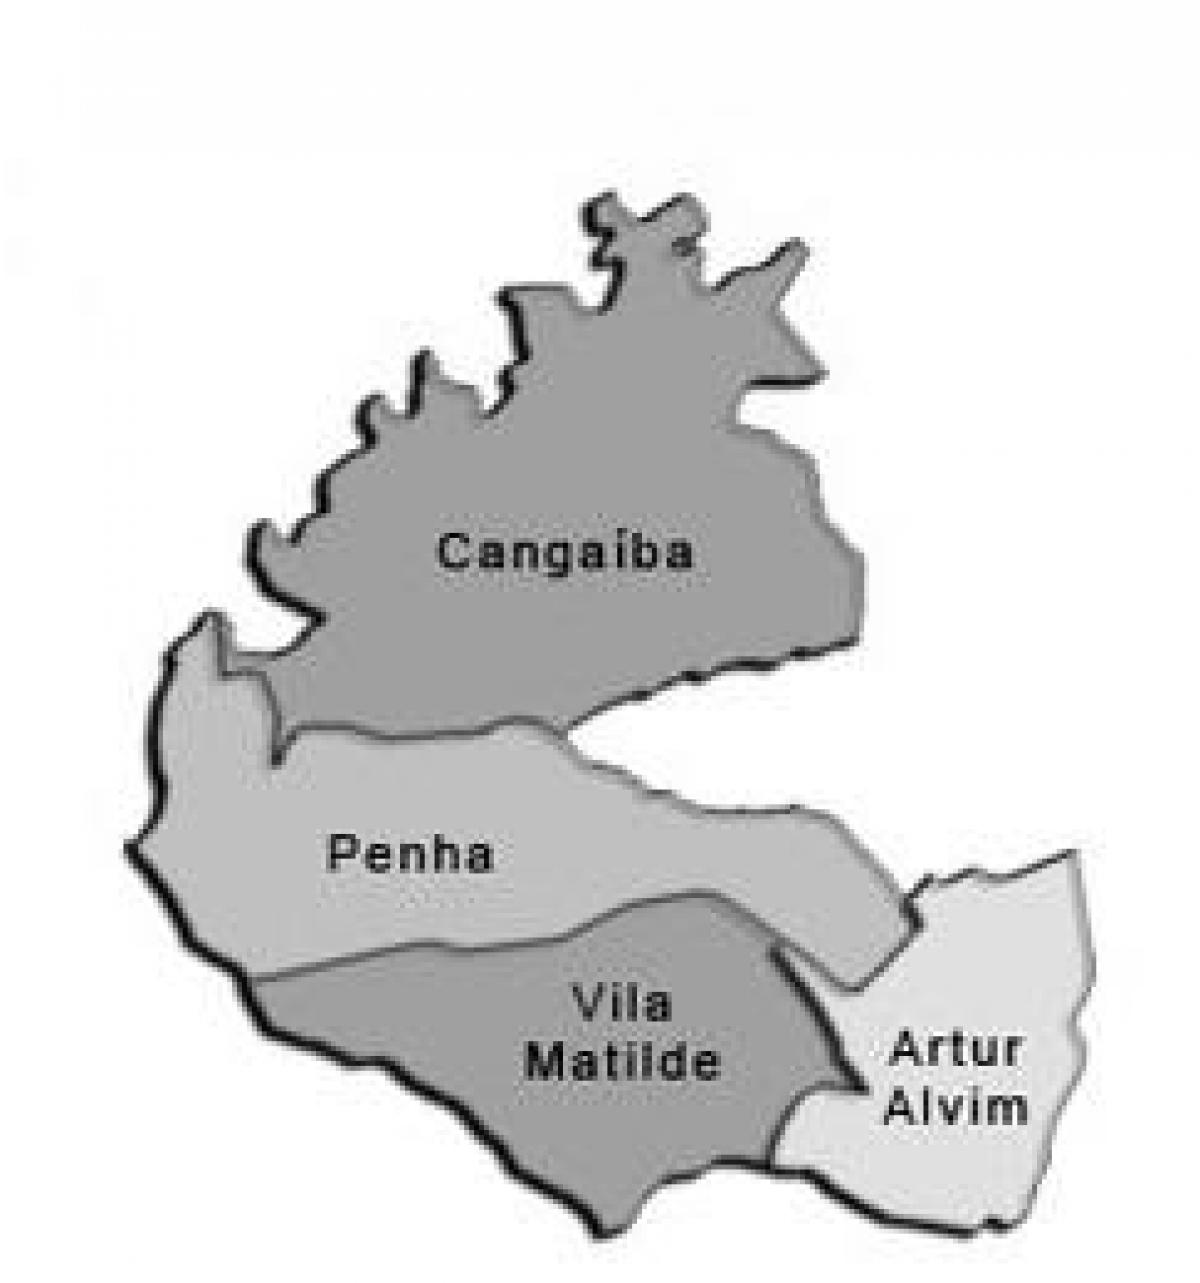 Karte Penha sub-prefecture